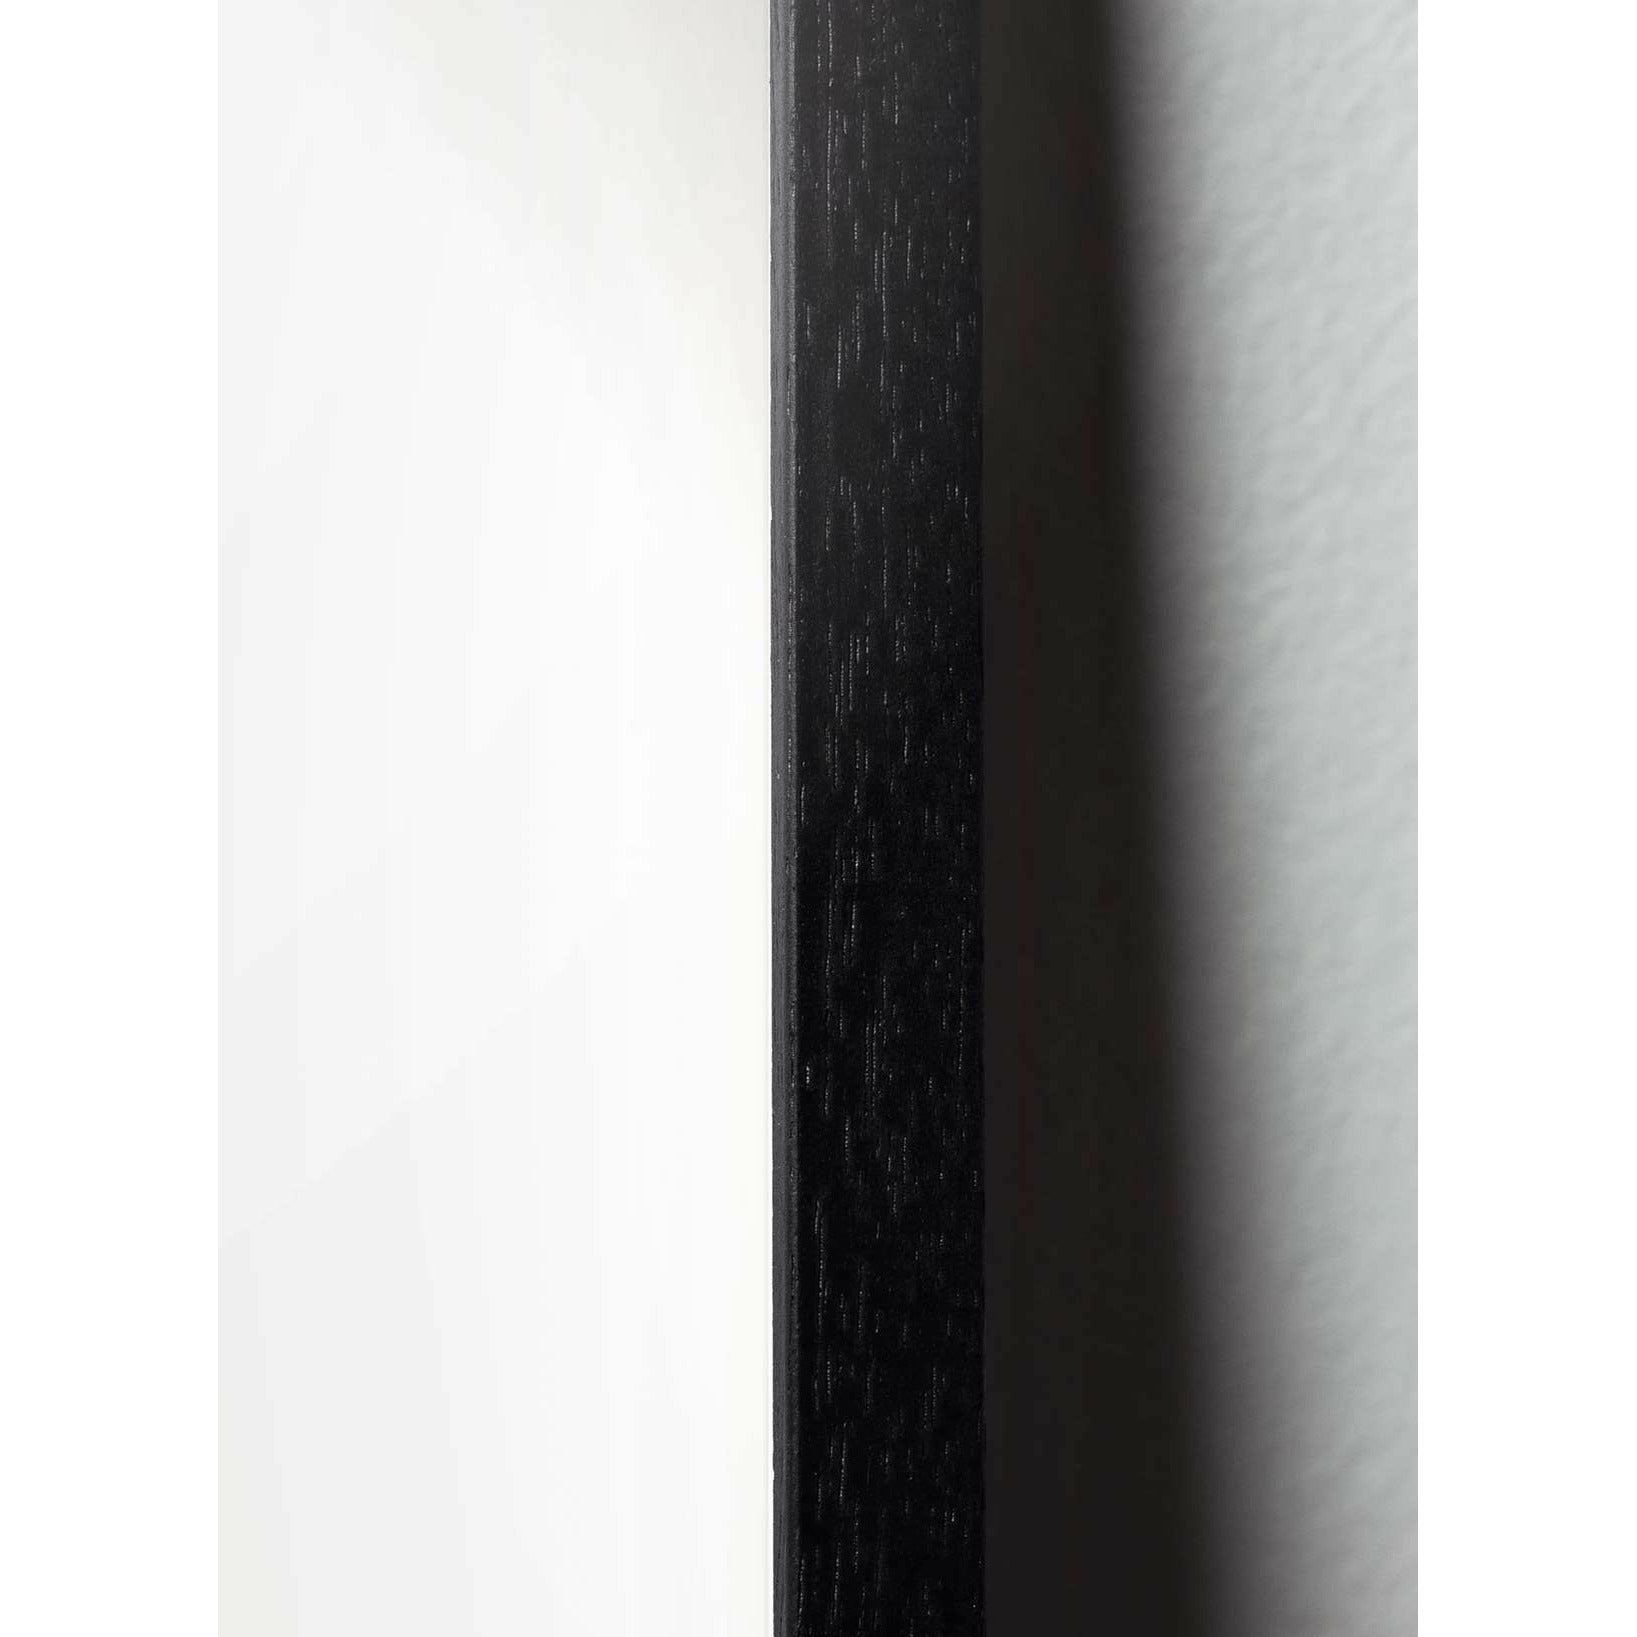 Plakát Pine Cone Line Plakát, rám v černém lakovaném dřevu 50x70 cm, bílé pozadí